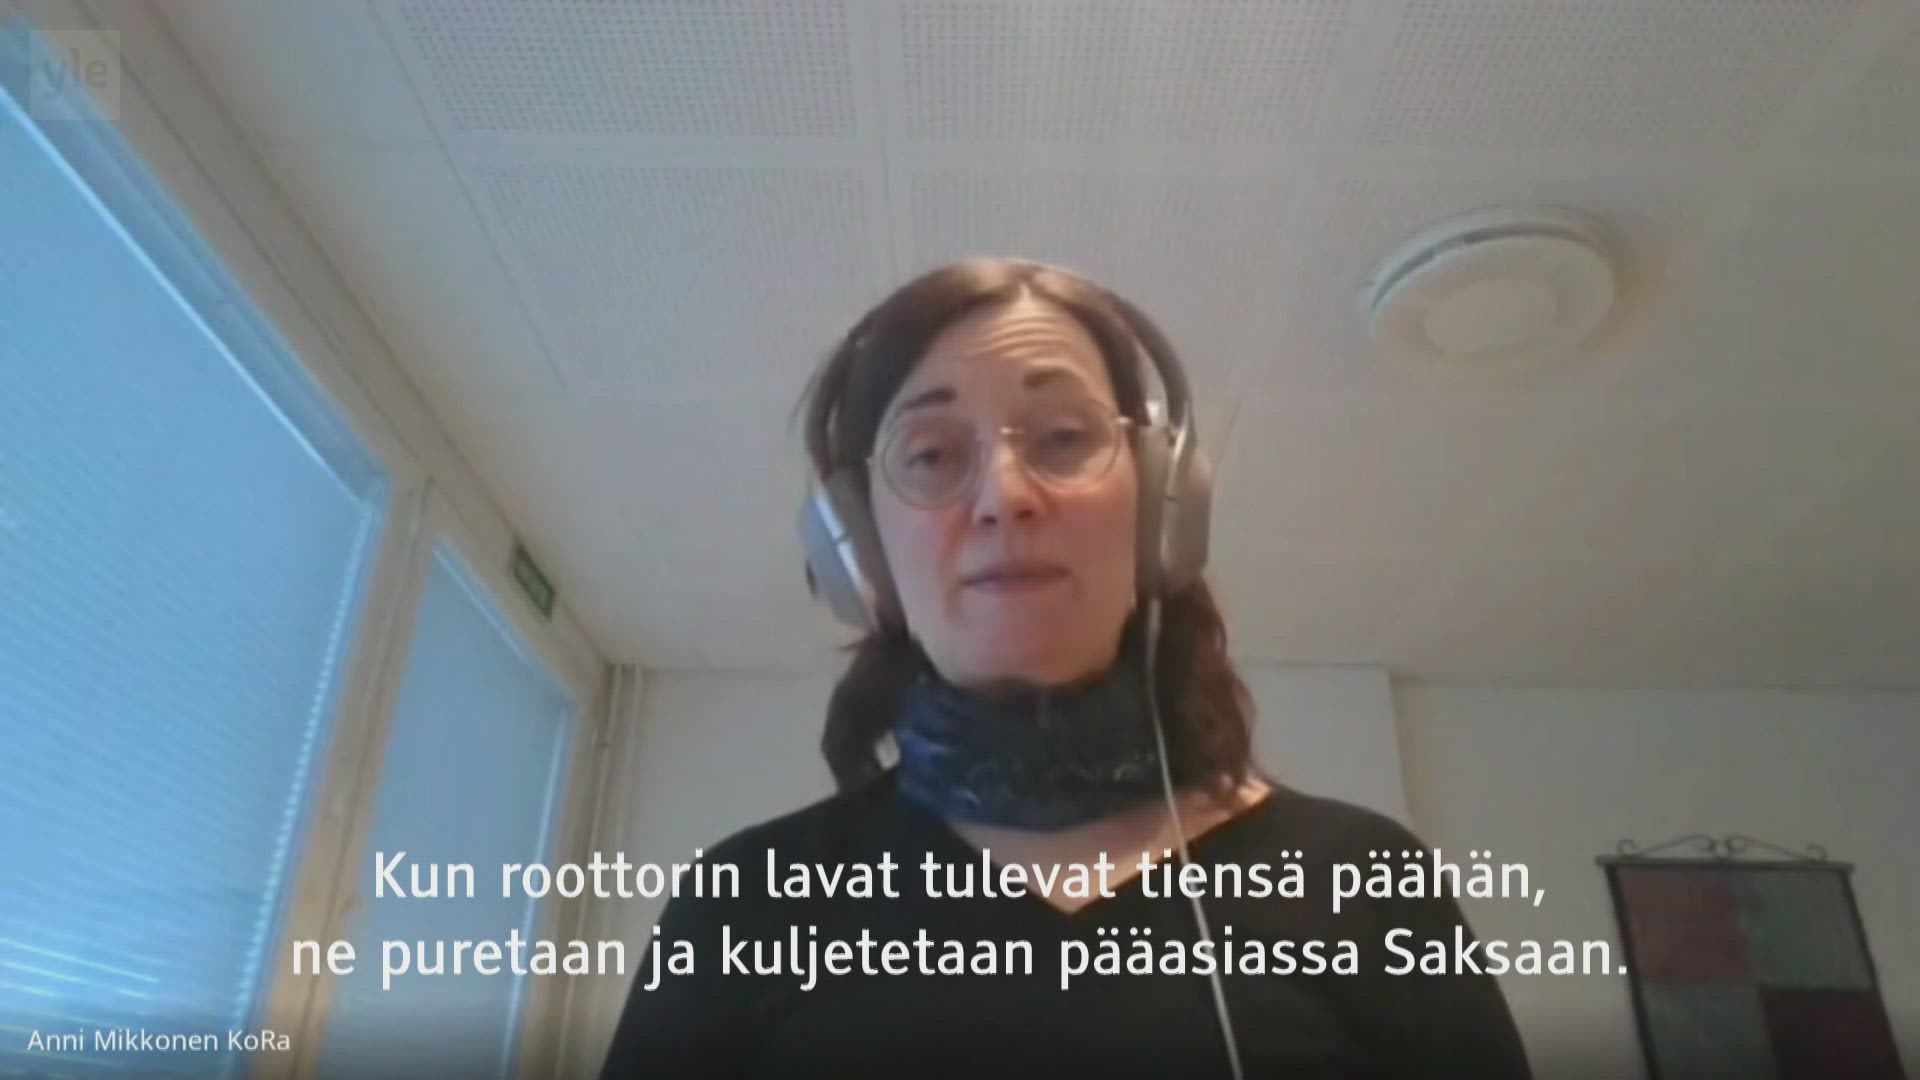 Suomen tuulivoimayhdistyksen toimitusjohtaja Anni Mikkonen kertoo, että Suomessakin kehitetään lapojen kierrätystä.